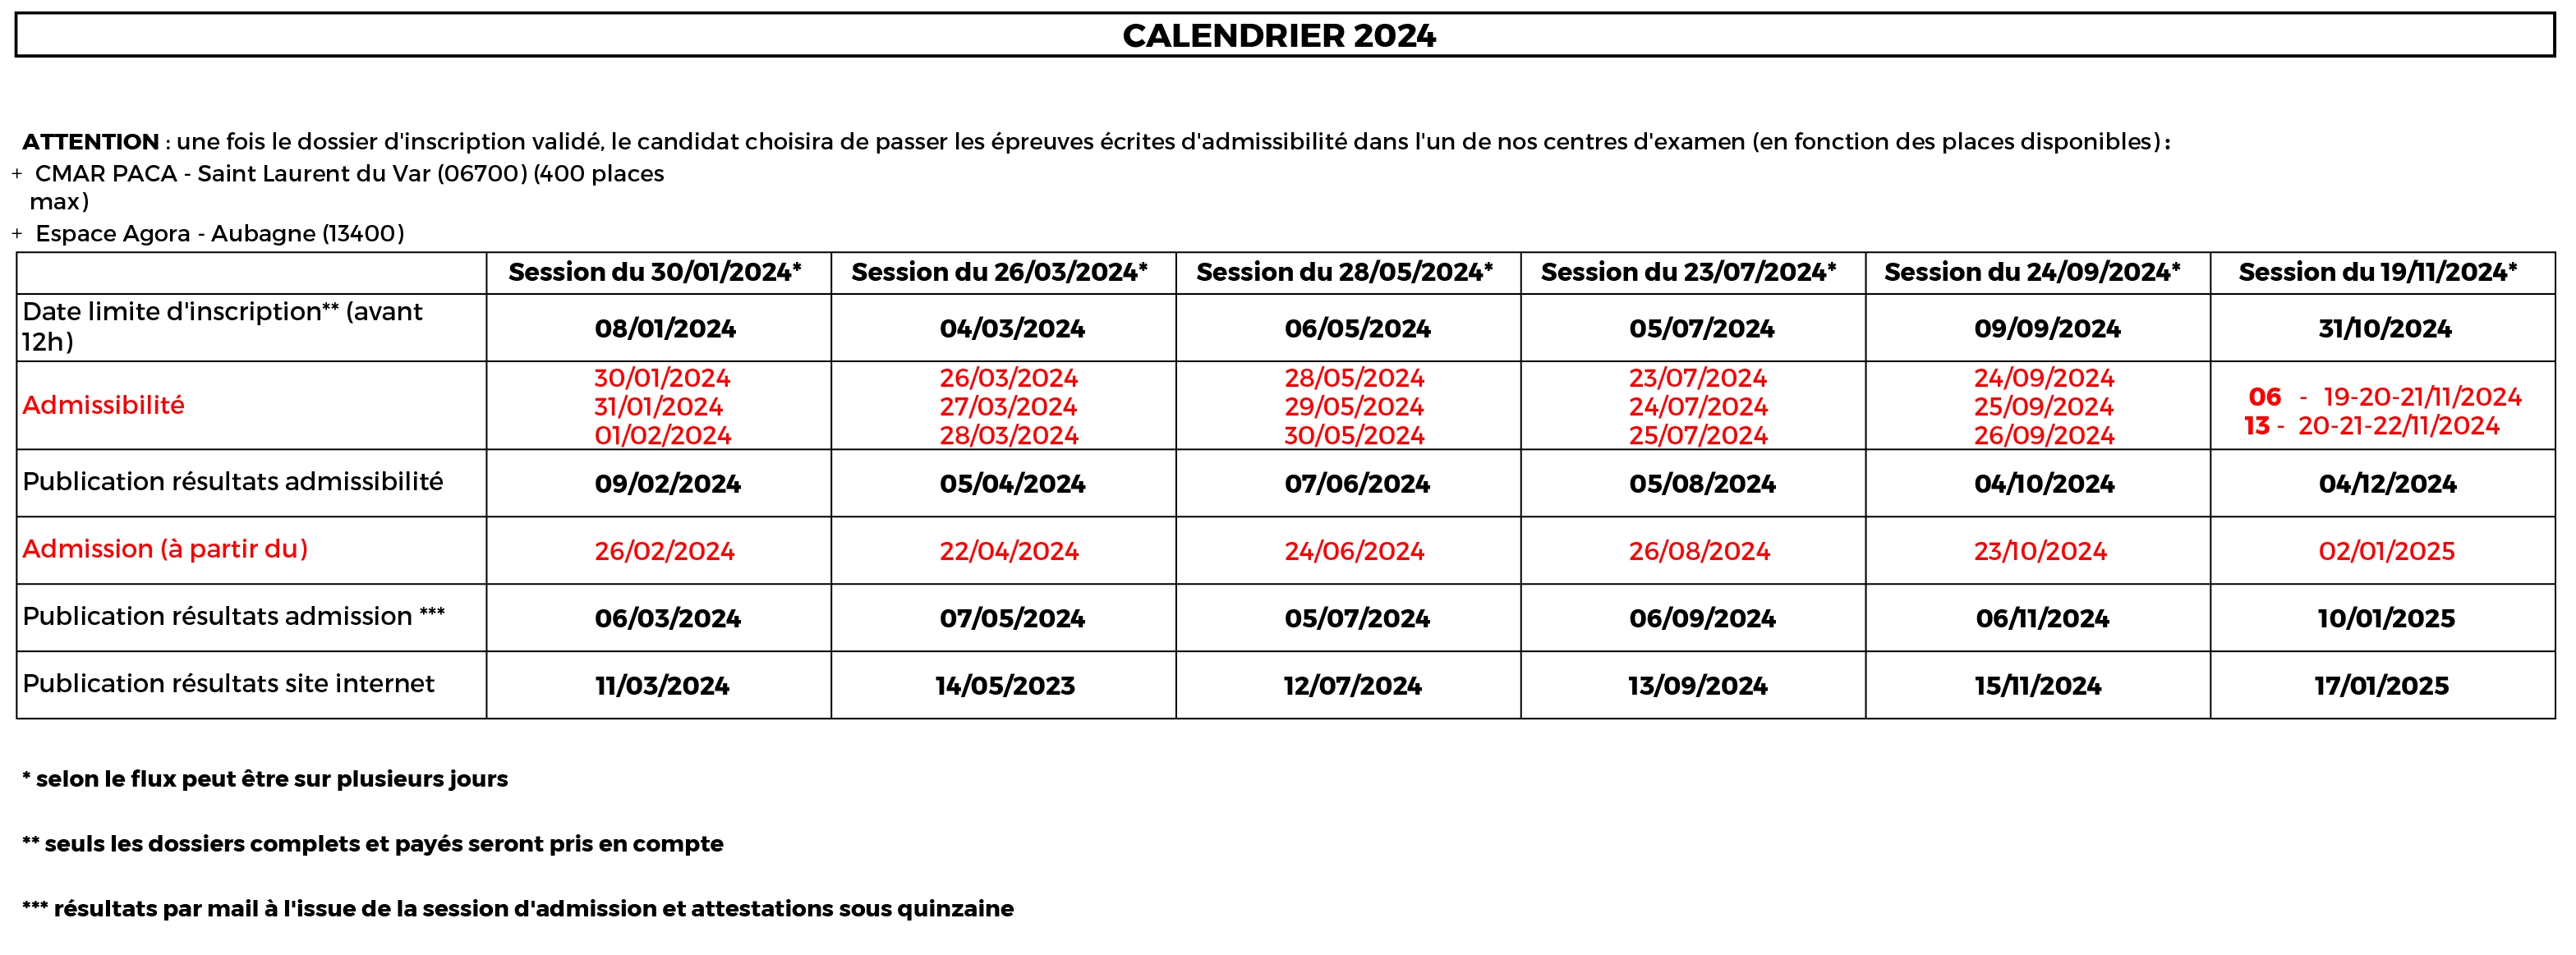 Calendrier 2024 - Examens taxis et VTC